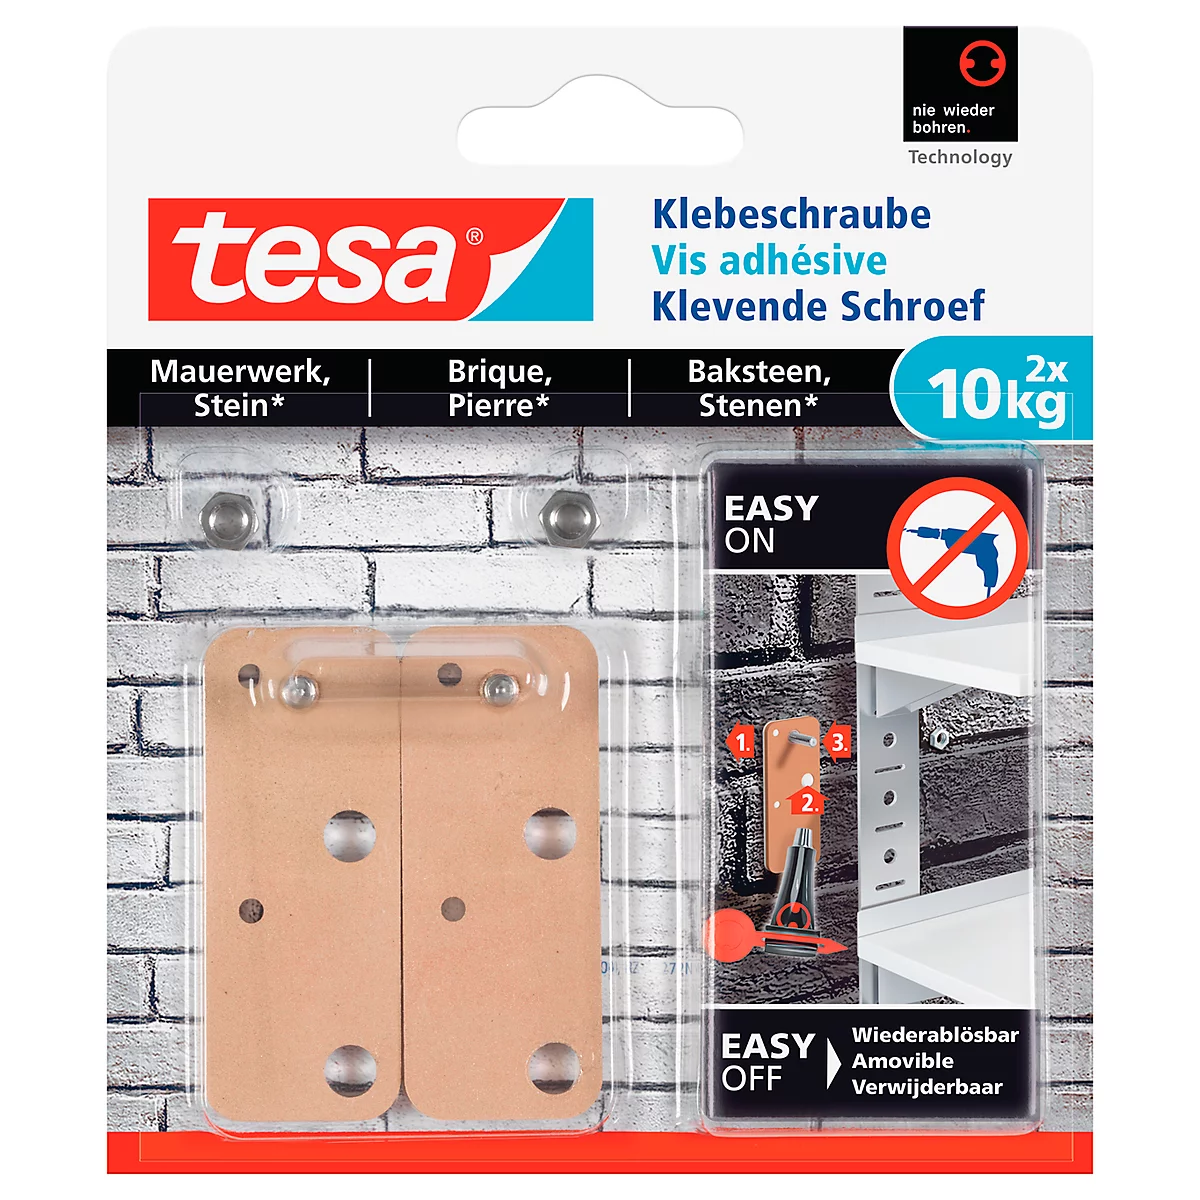 Klebeschraube tesa®, für Mauerwerk & Stein im Innen- & Aussenbereich, Haftkraft bis 10 kg, ablösbar, viereckig, 2 Stück